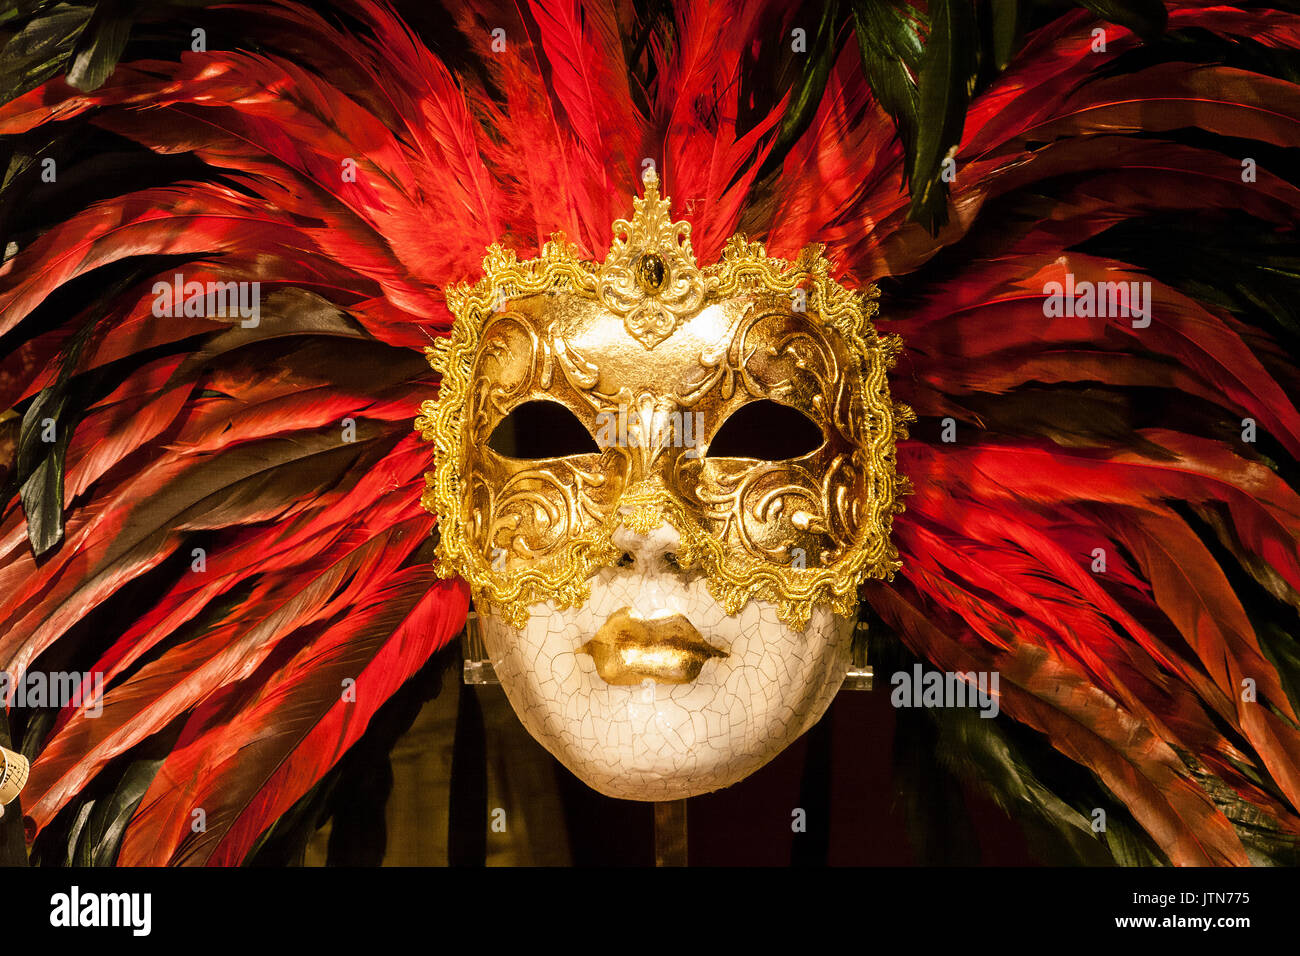 Masque de carnaval vénitien à Venise, Italie Banque D'Images